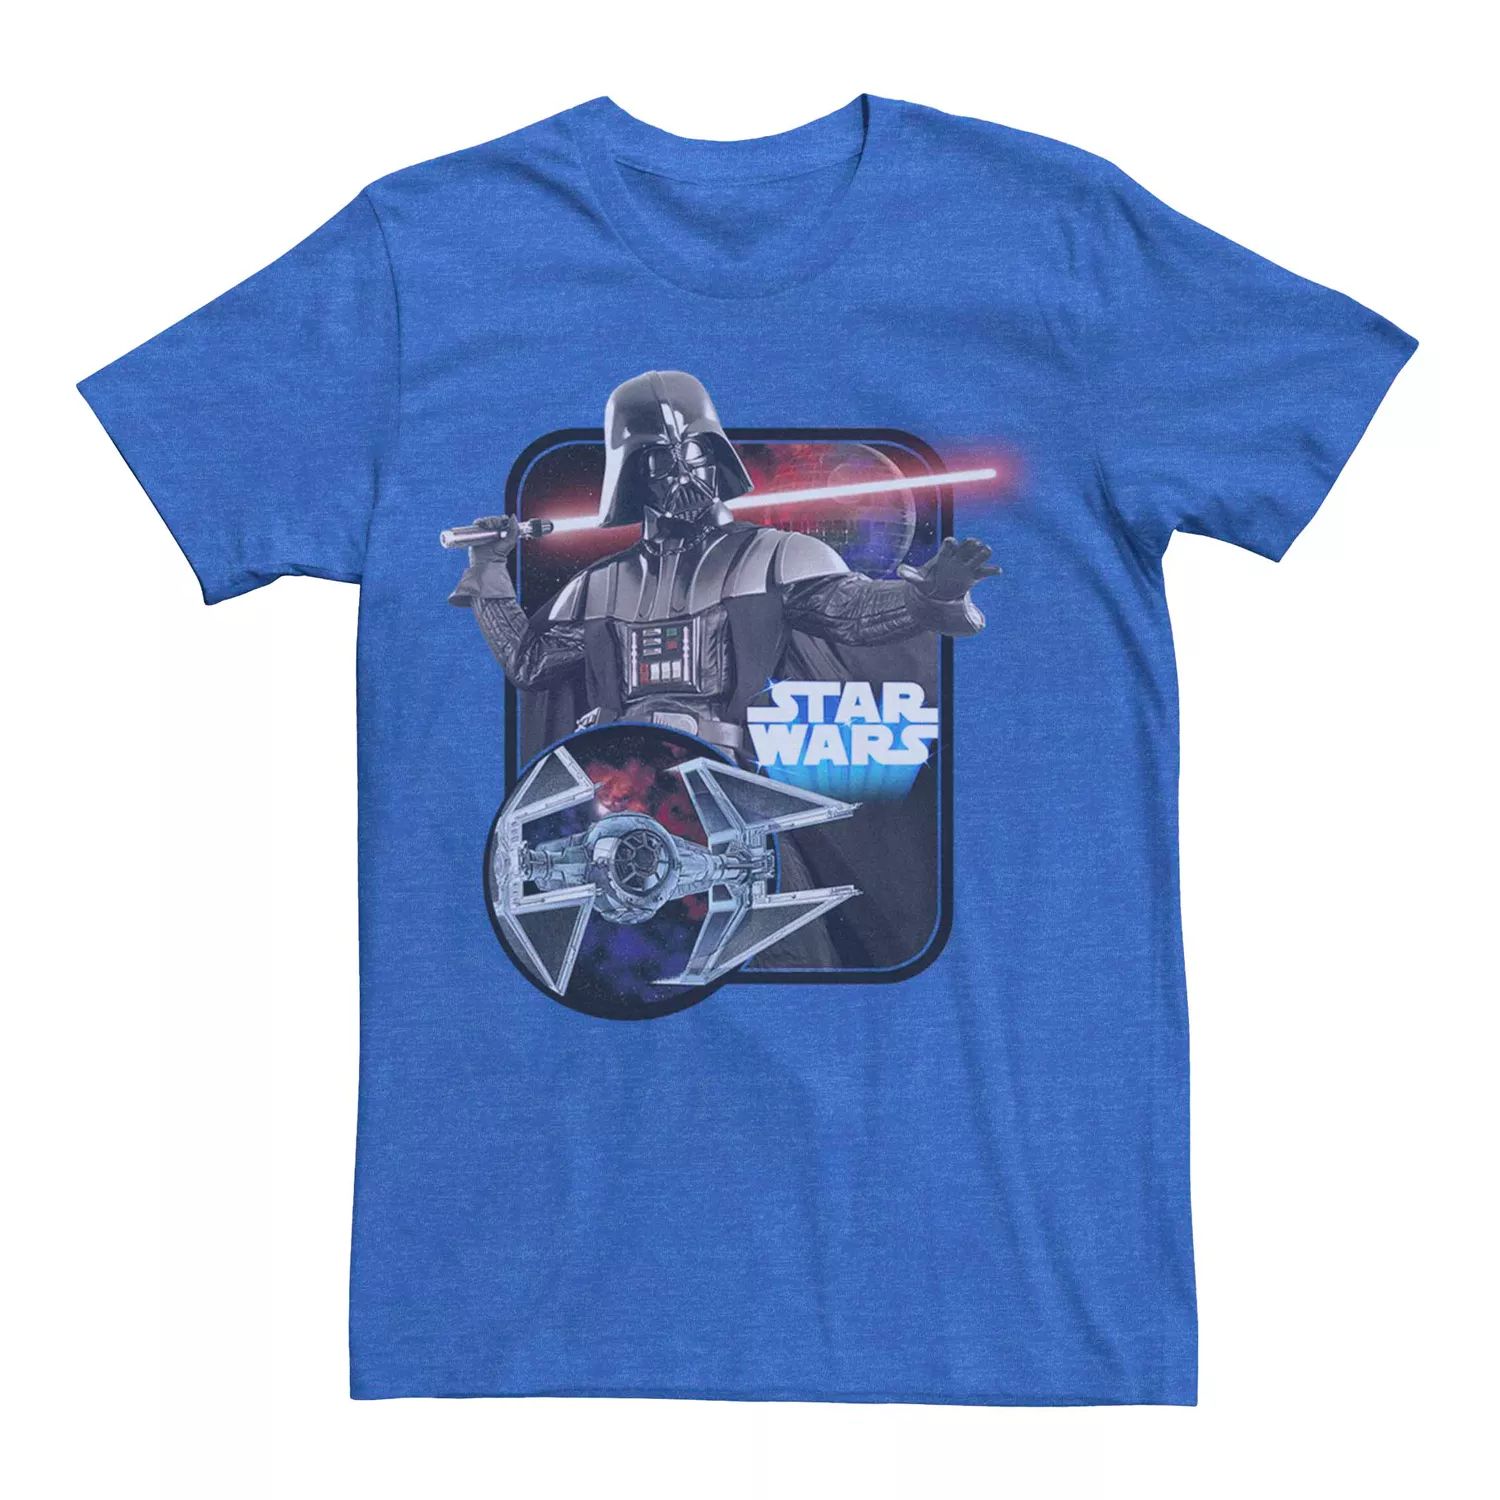 Мужская футболка с графическим рисунком и плакатом «Звездные войны Дарт Вейдер» Licensed Character ирис сибирский ай си старз